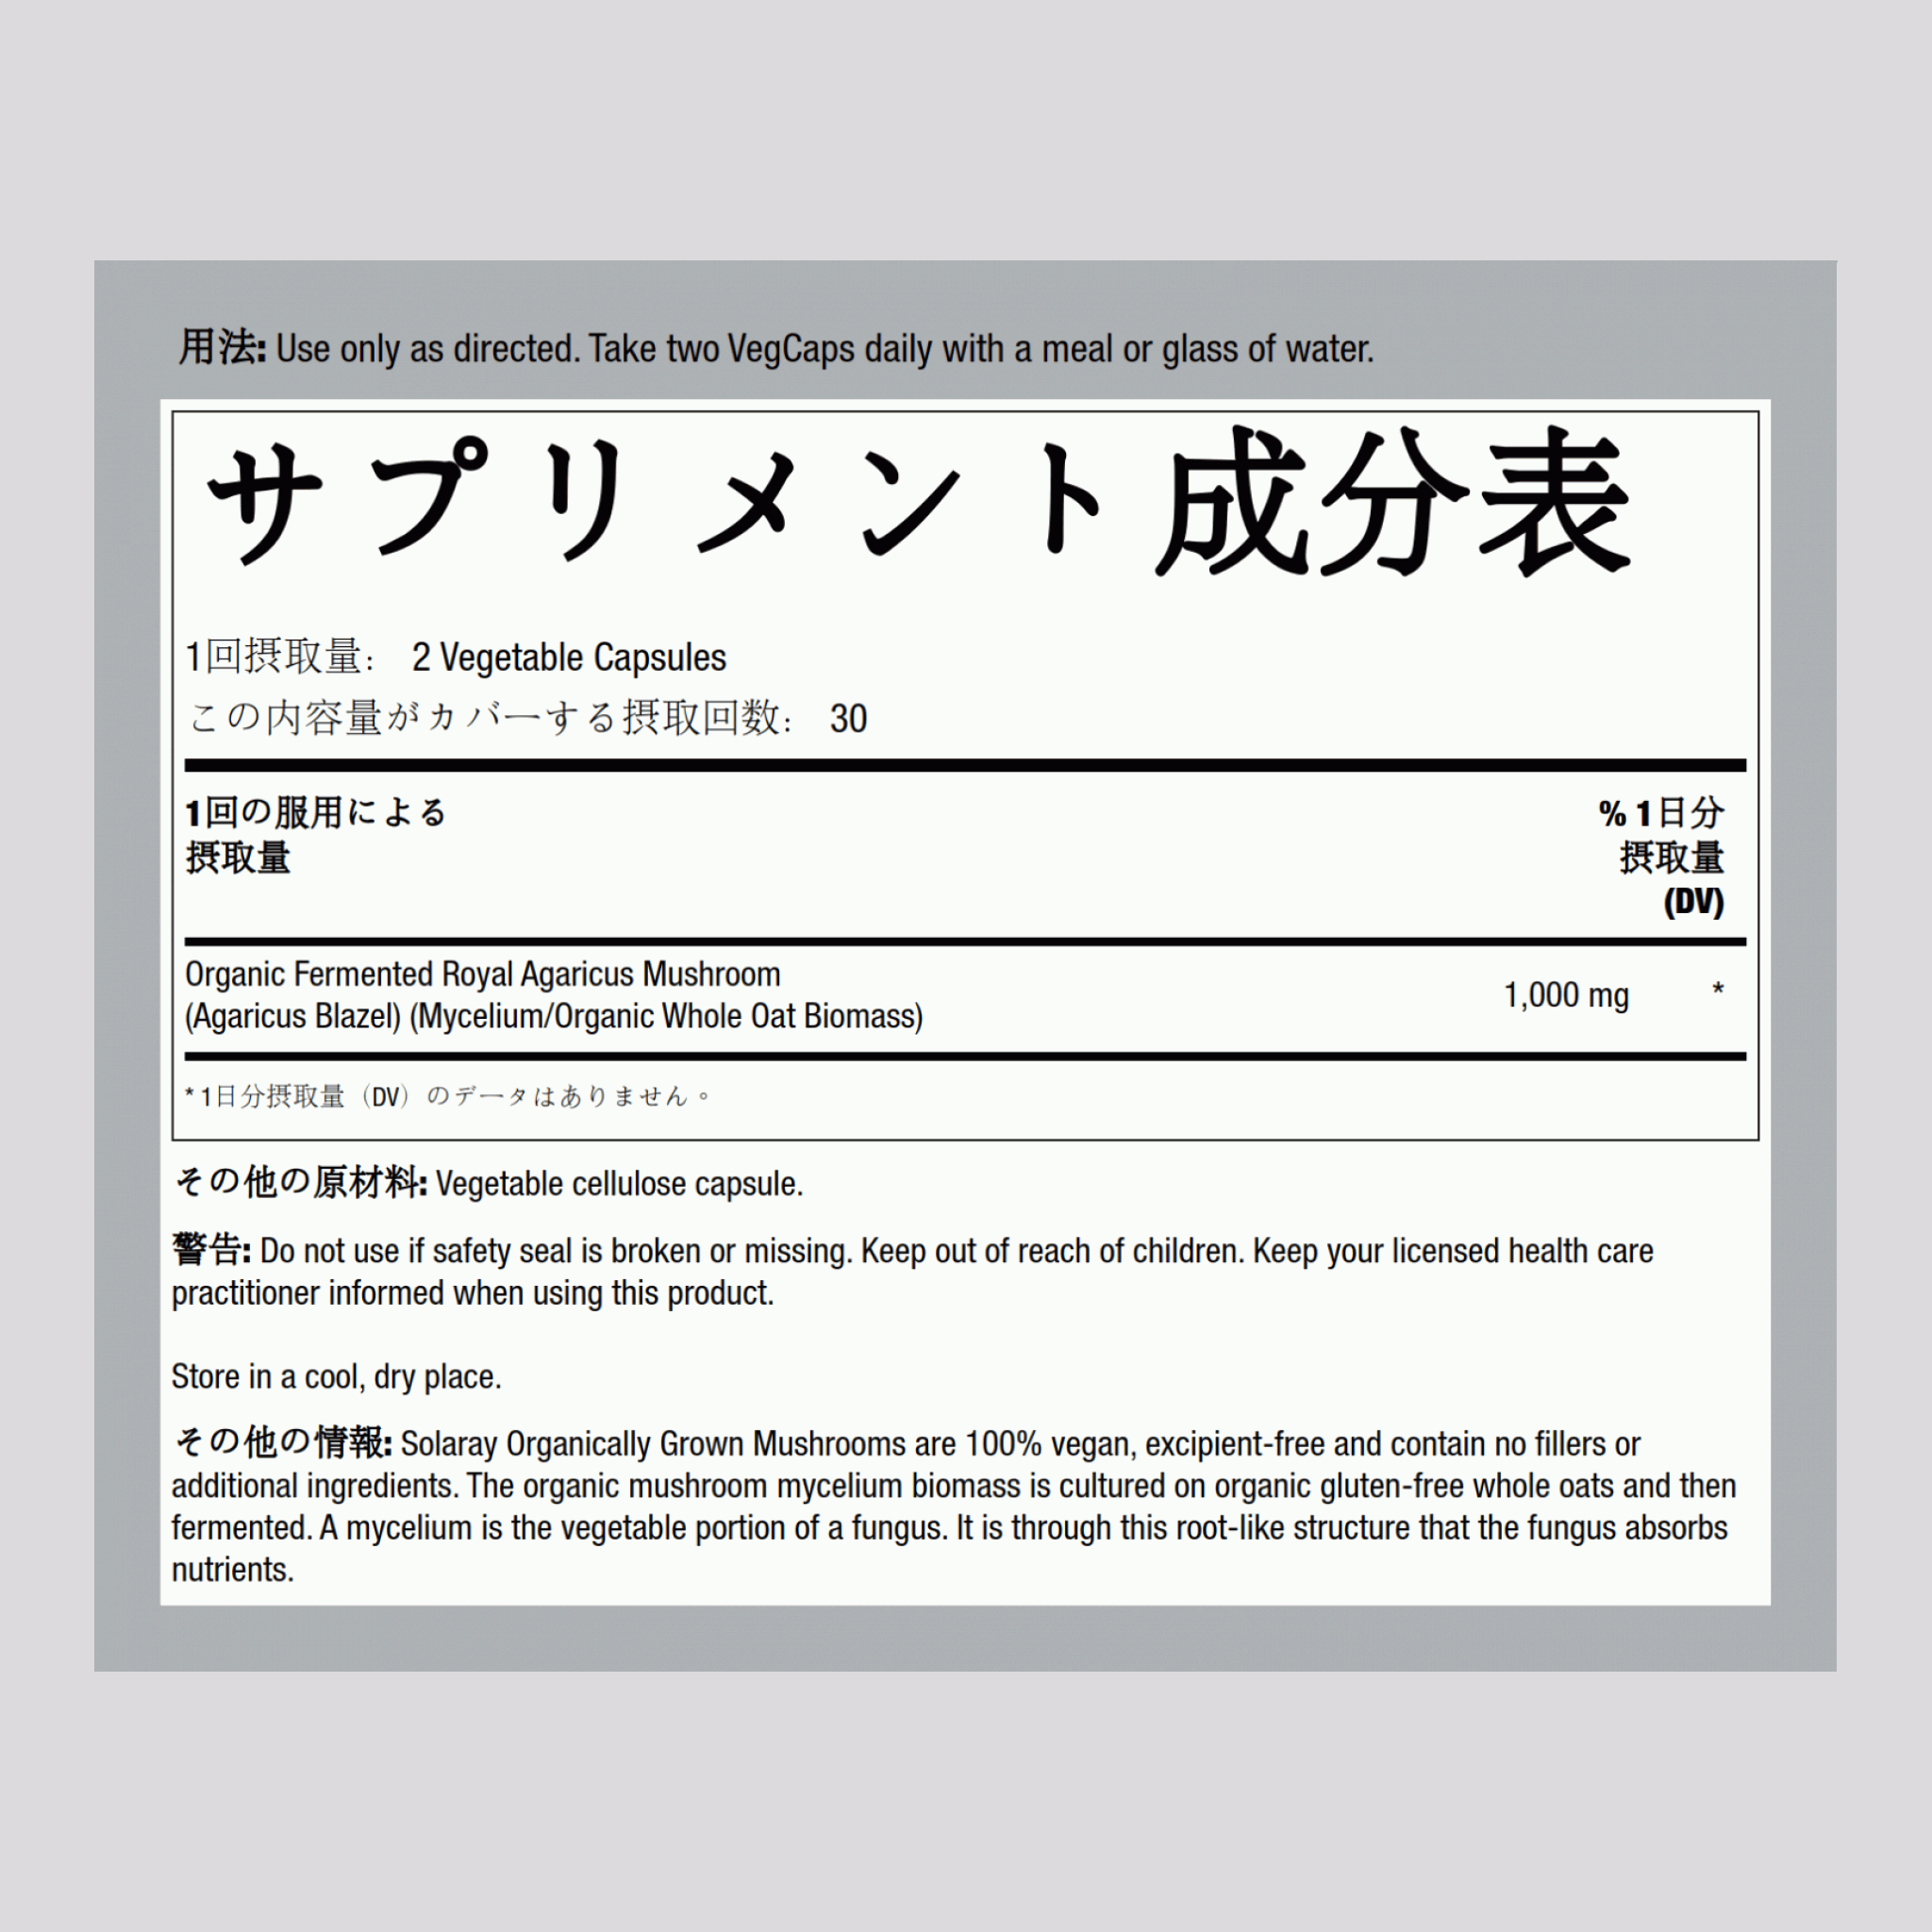 発酵ロイヤルアガリクス茸 (オーガニック) 500 mg 60 ベジタリアン カプセル     